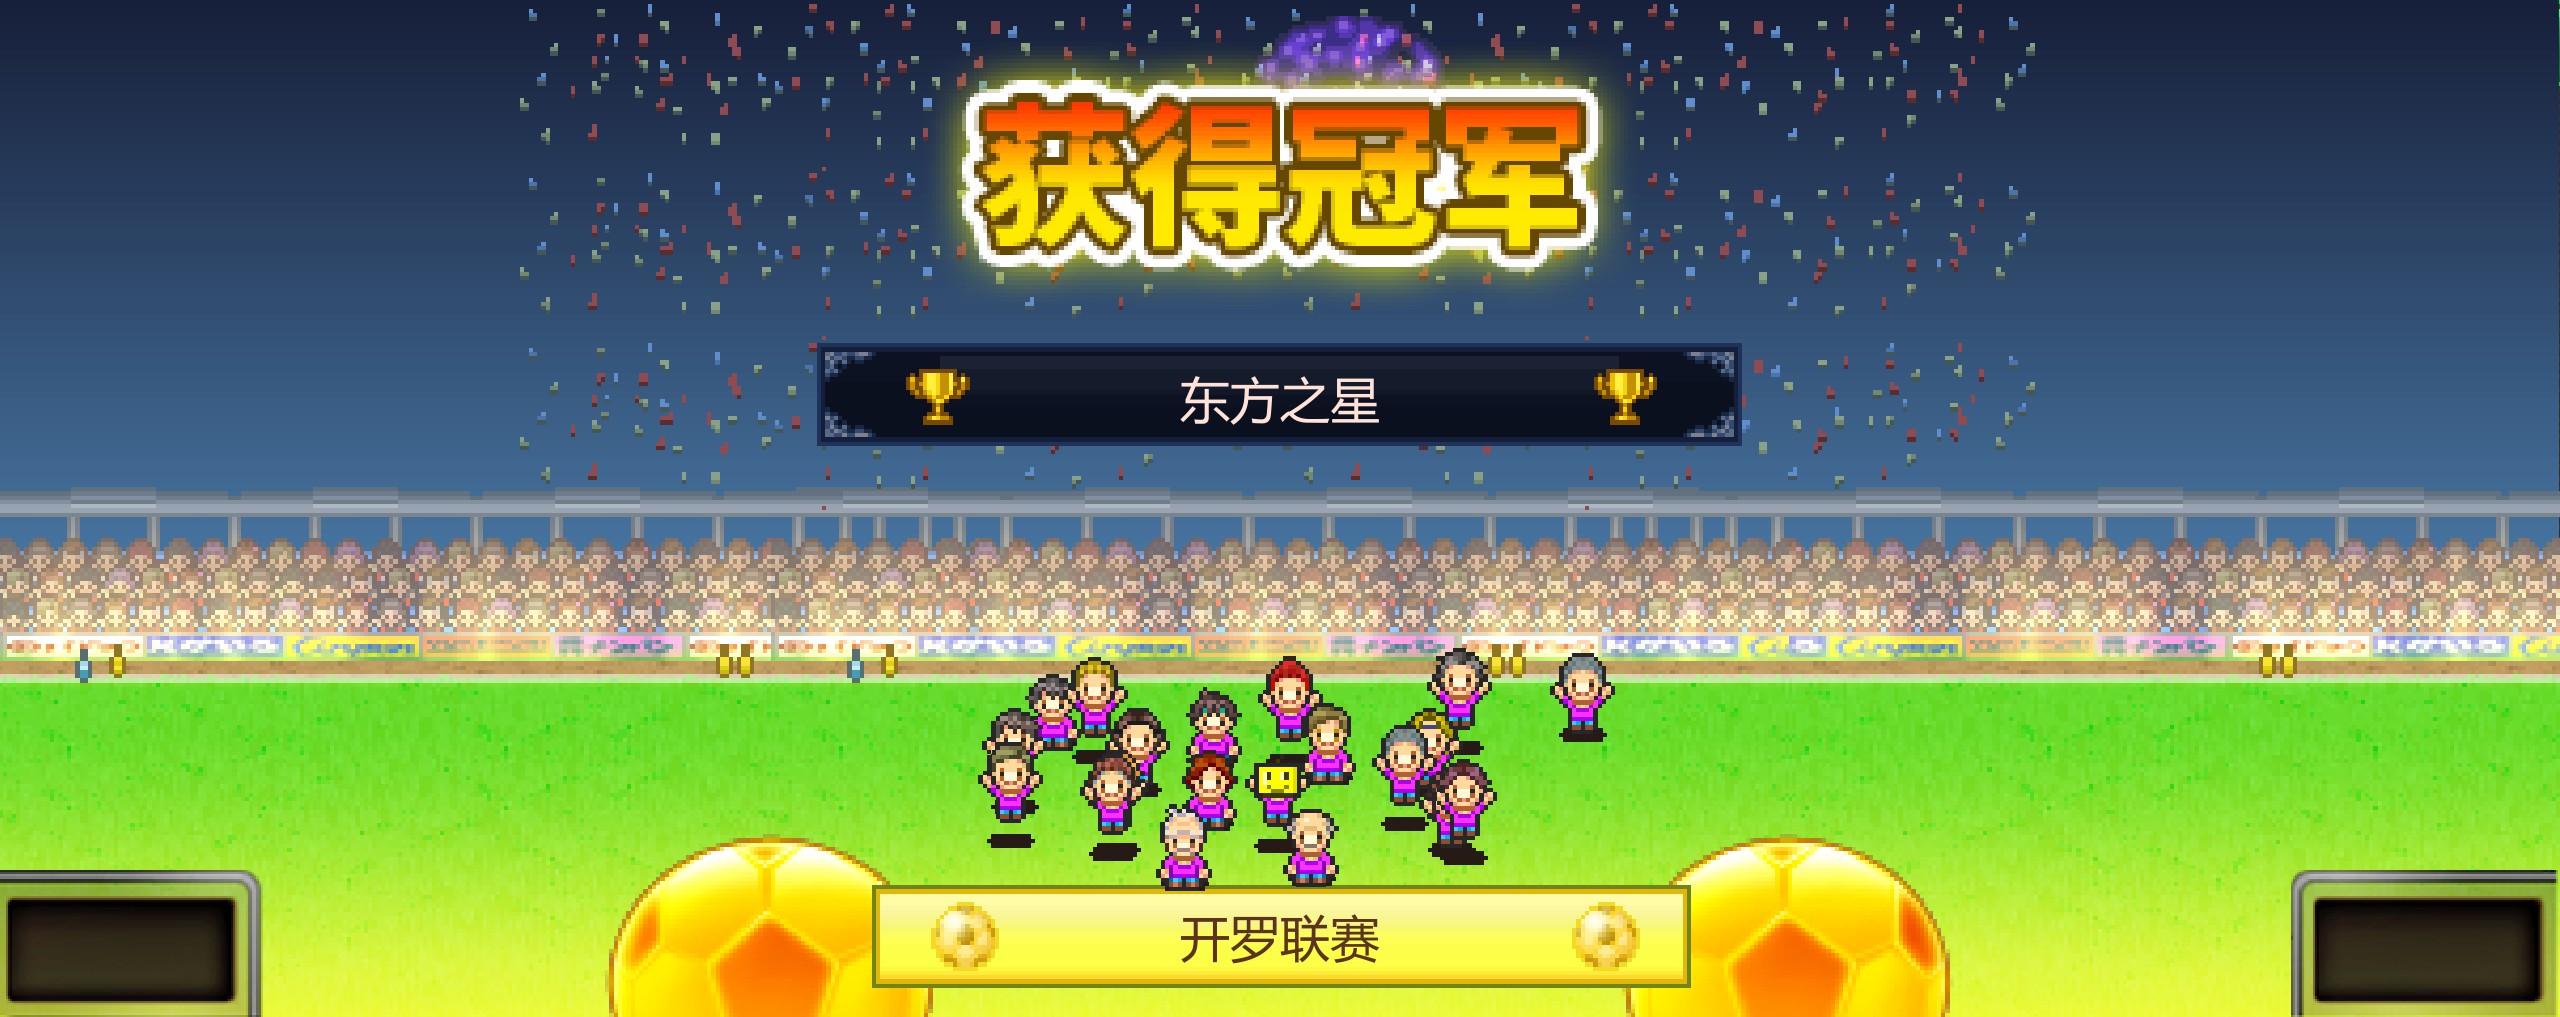 足球俱乐部物语游戏评测20220809004